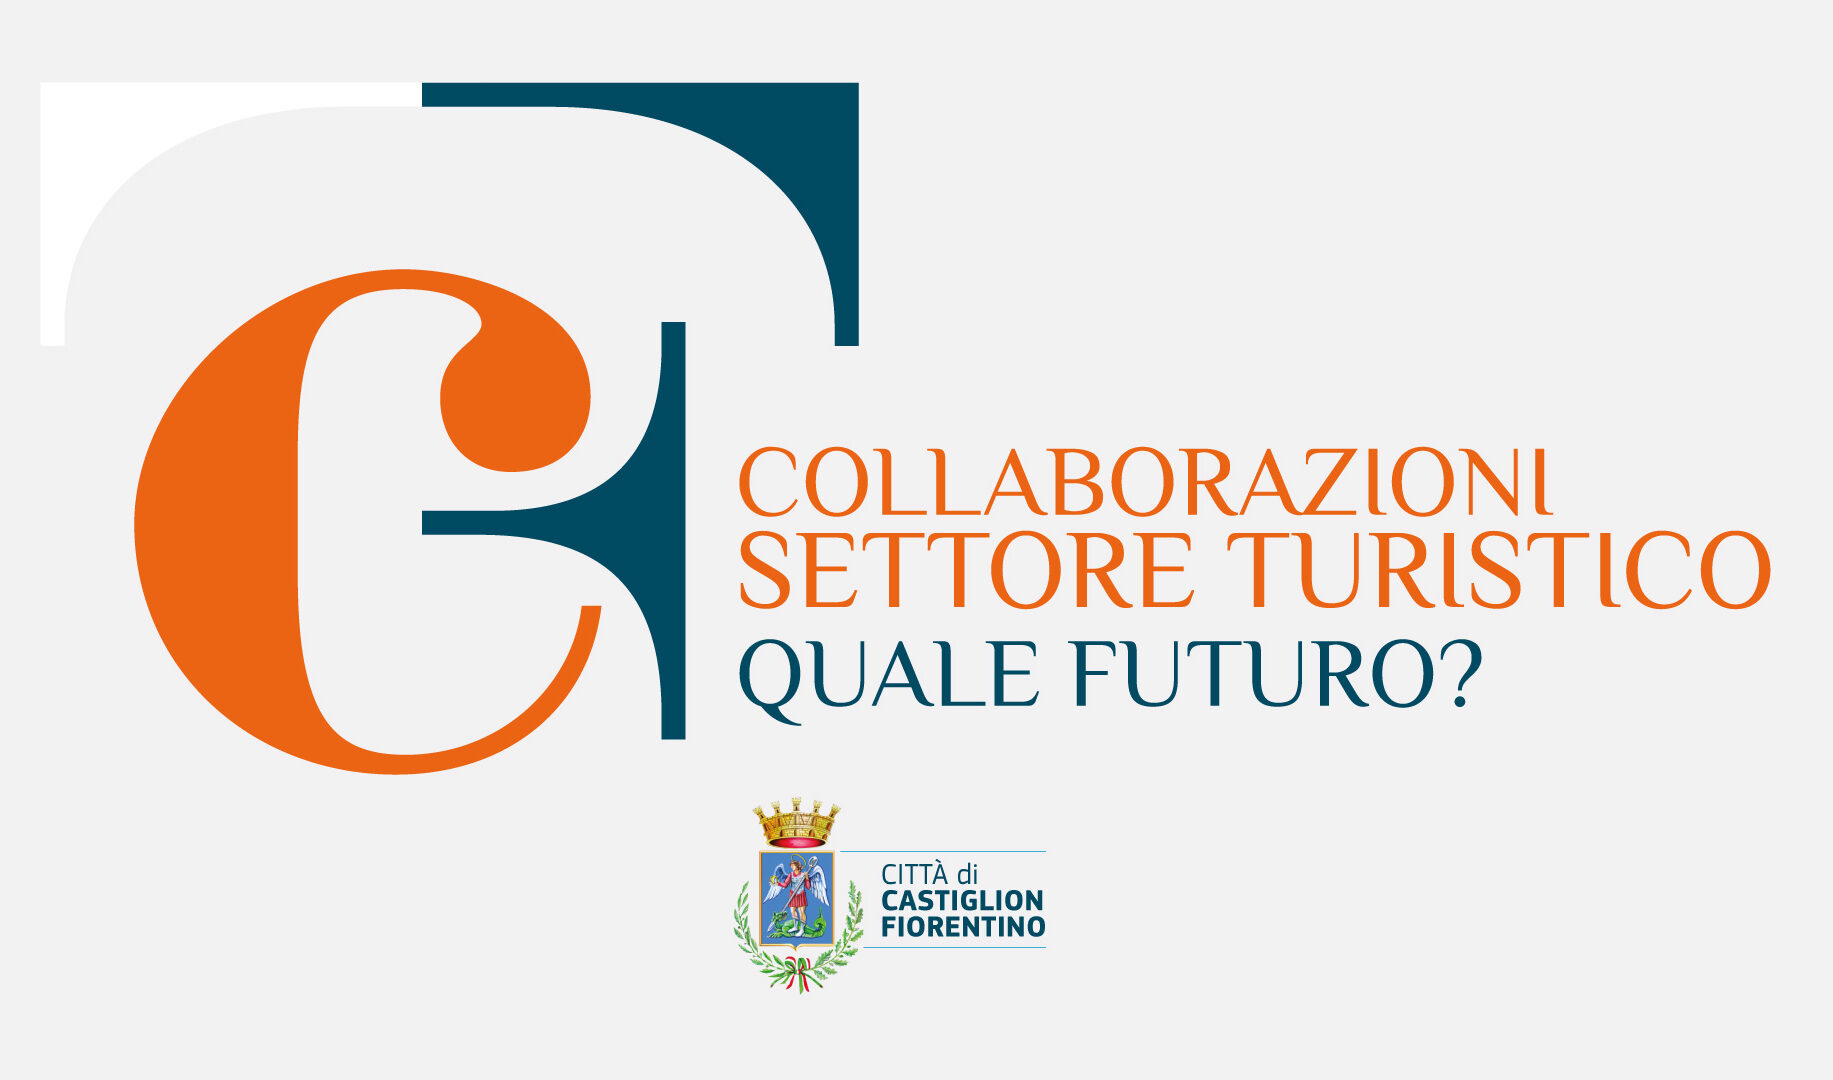 Experience Castiglion Fiorentino. Presentato il progetto di governance turistica, accoglienza, commercializzazione e comunicazione finalizzato alla promozione del territorio